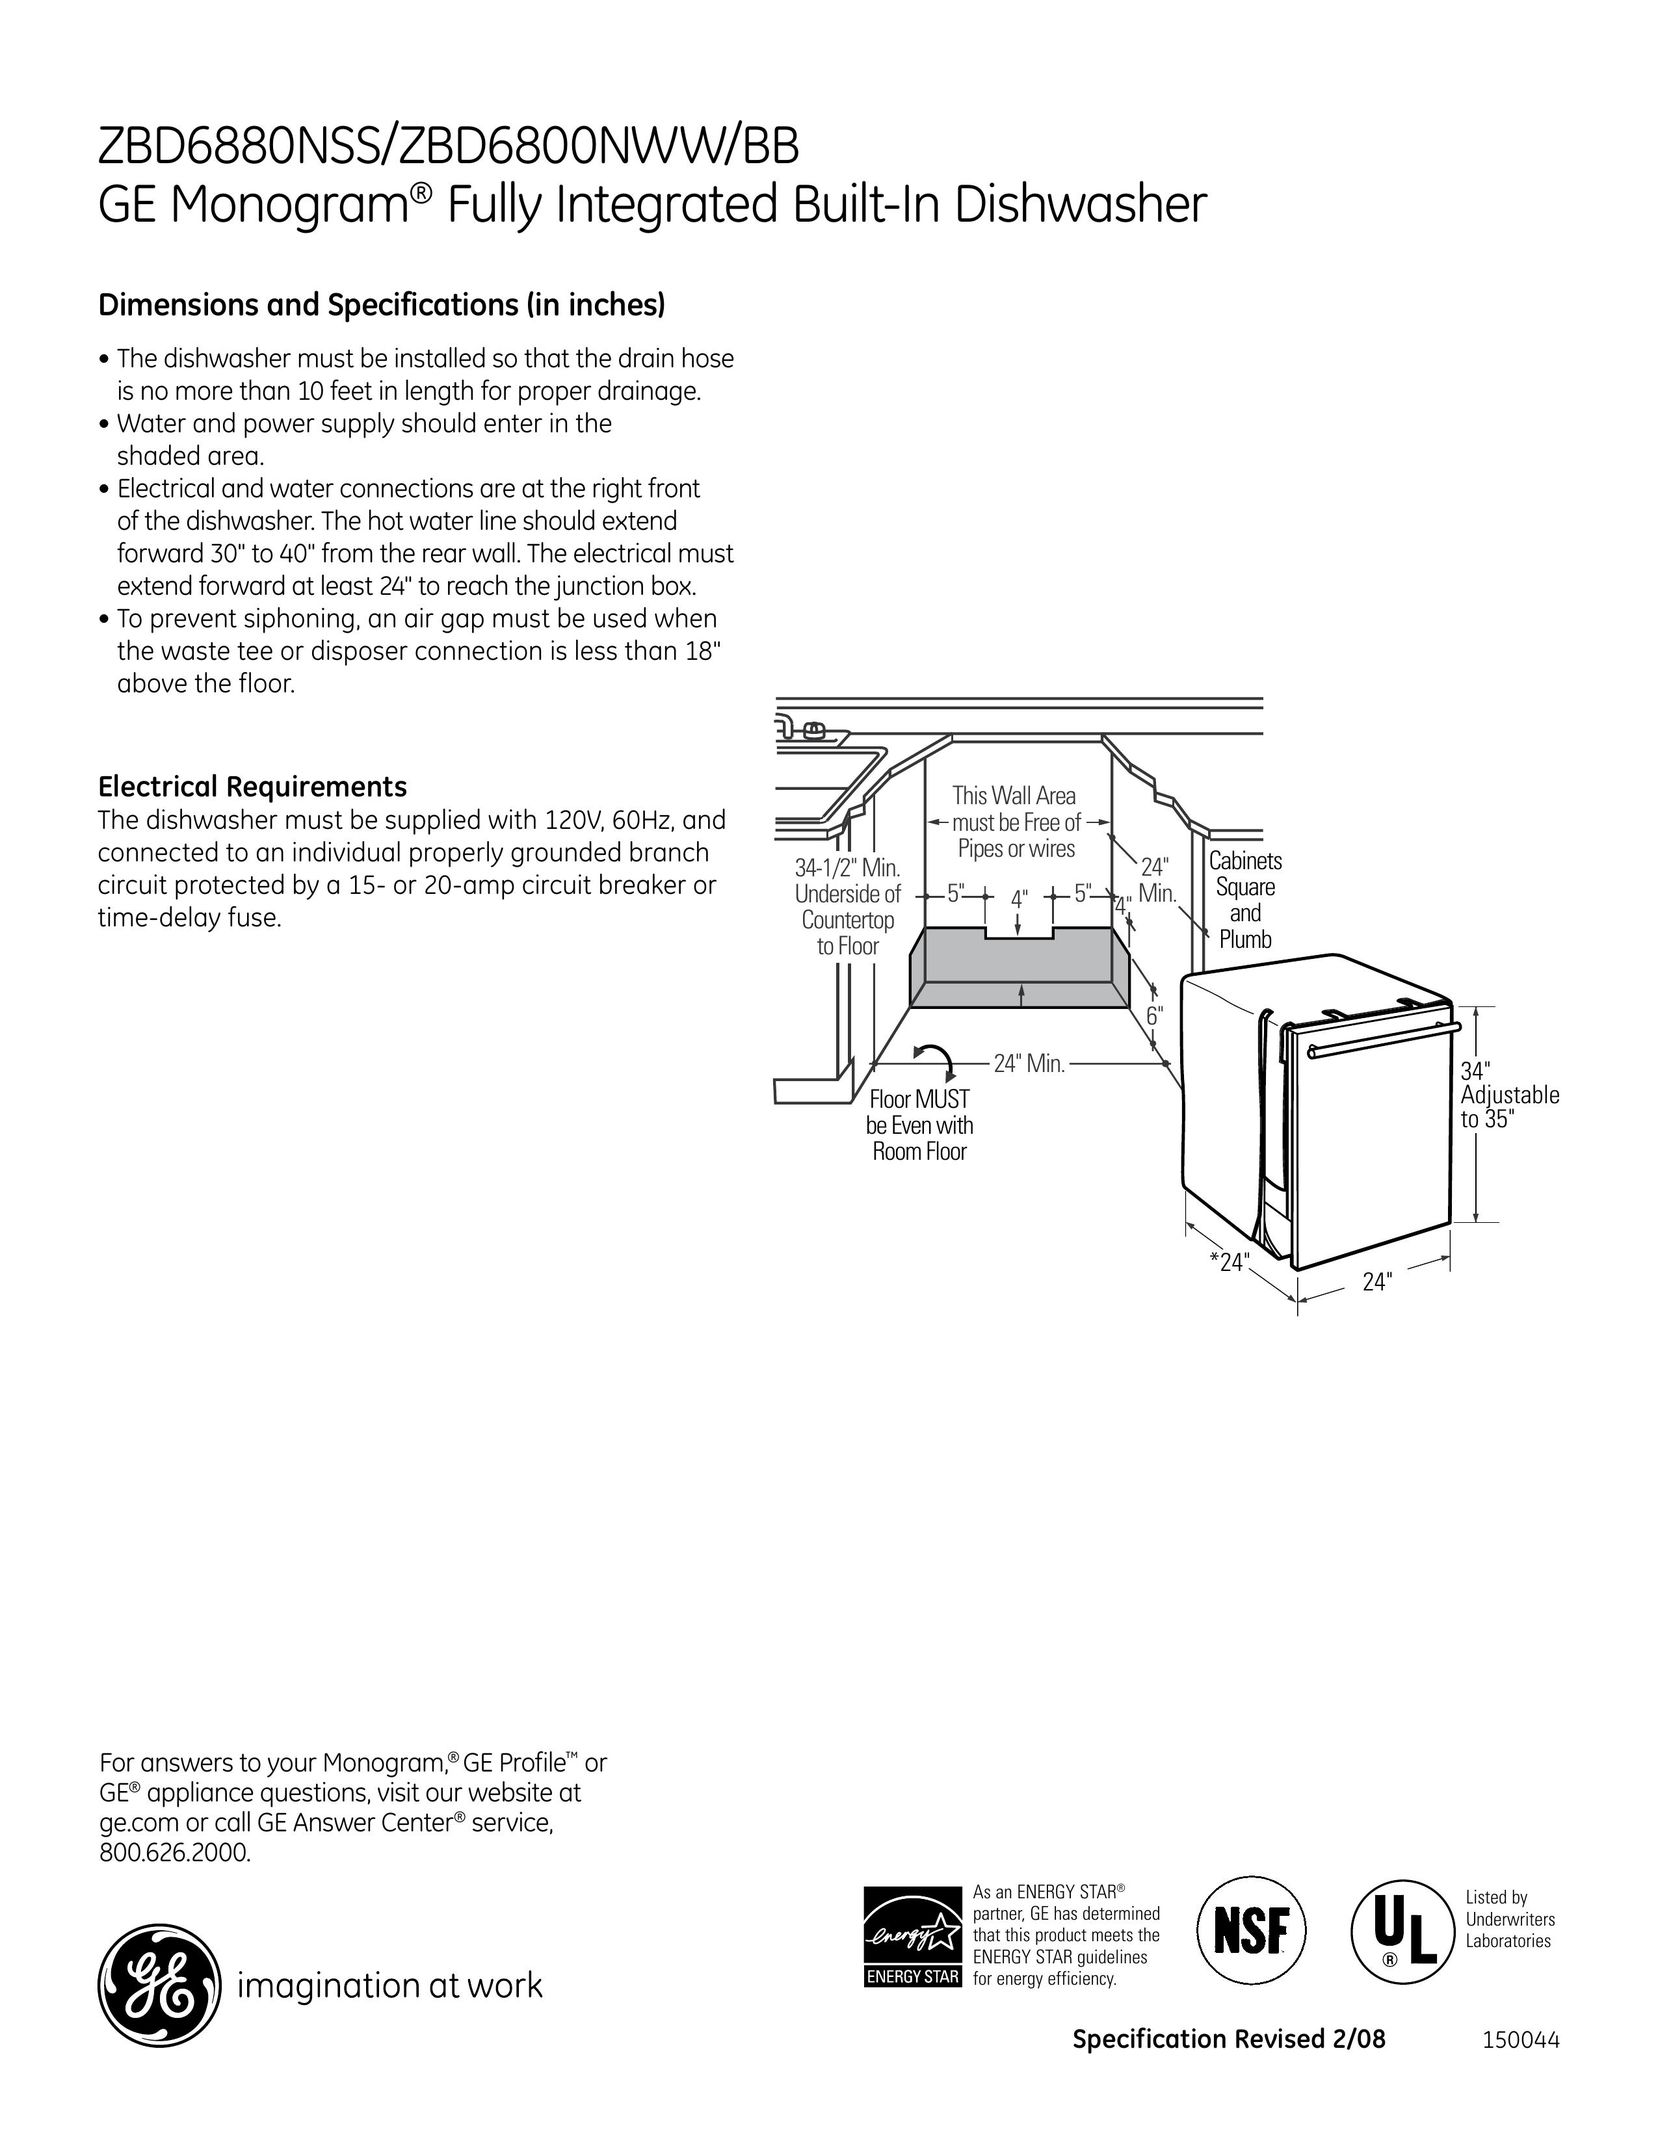 GE Monogram zbd6800Nbb Dishwasher User Manual